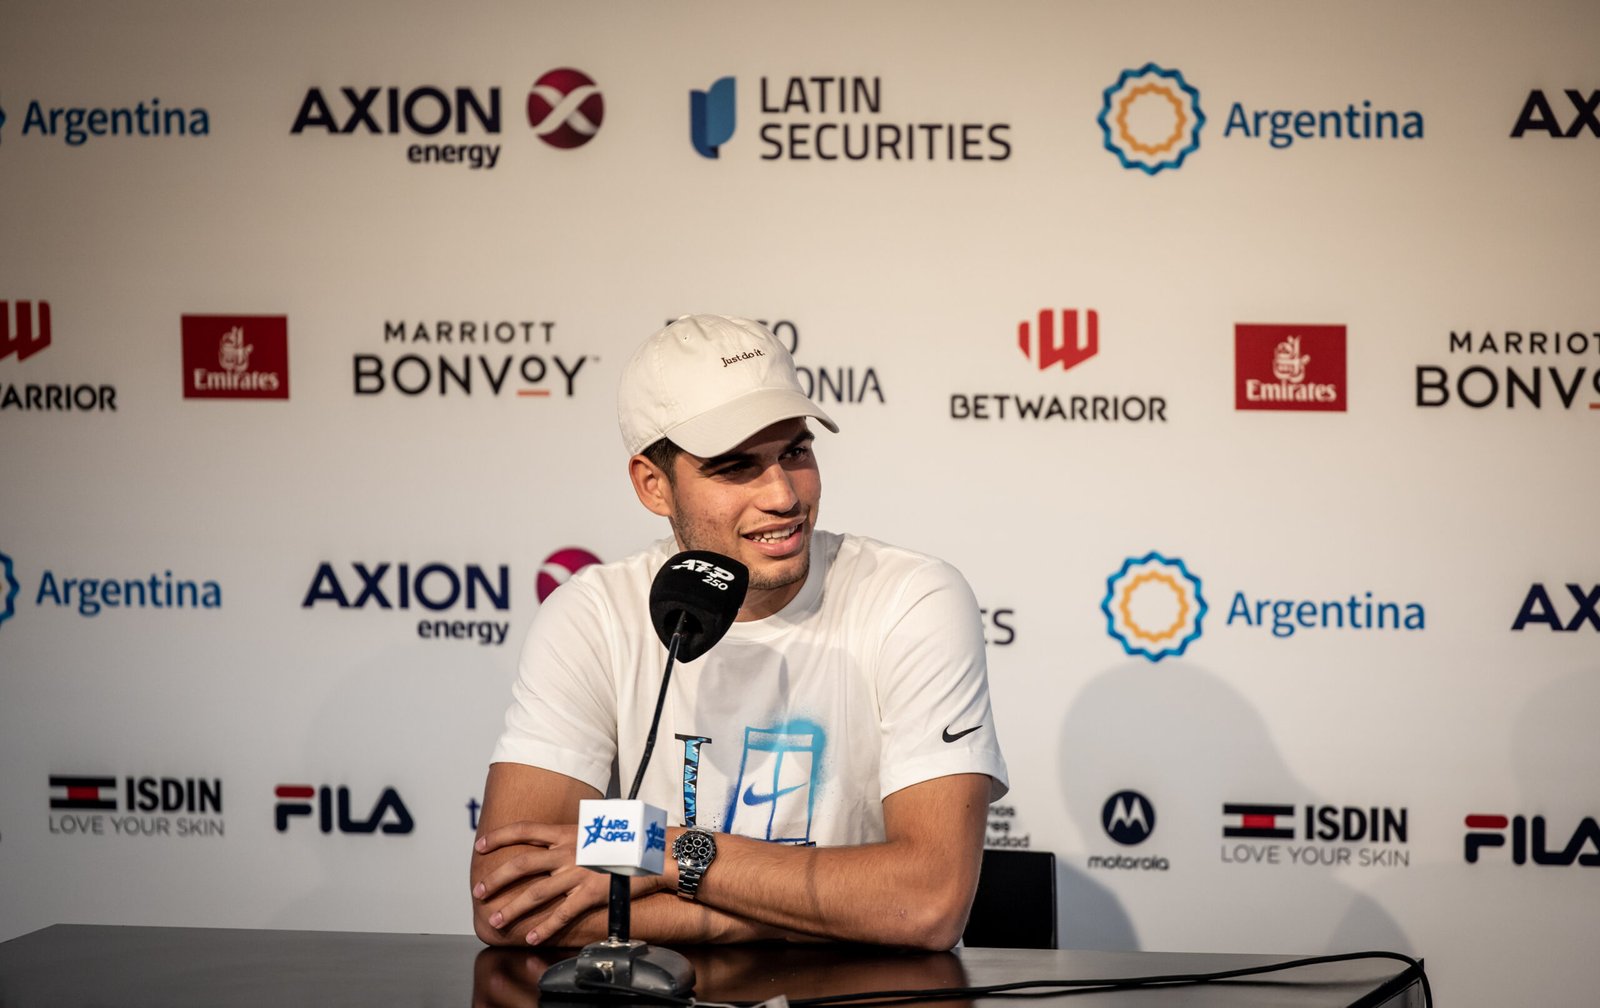 Carlos Alcaraz, quien alcanzó el año pasado el número uno del mundo, siendo el tenista más joven de la historia en conseguirlo